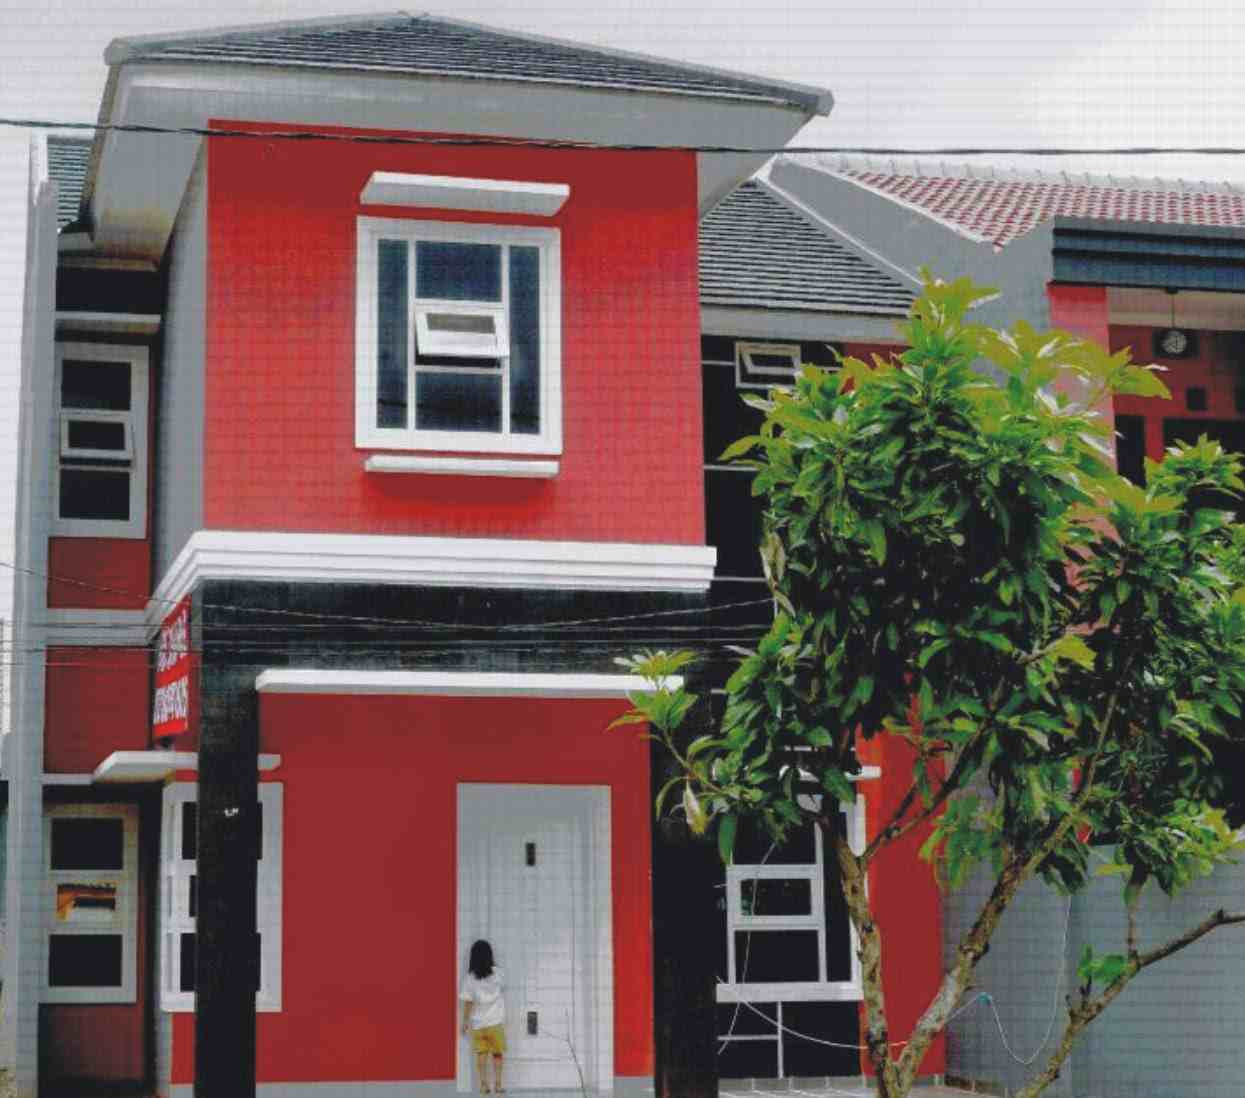 64 Design Rumah Minimalis Warna Merah Desain Rumah 